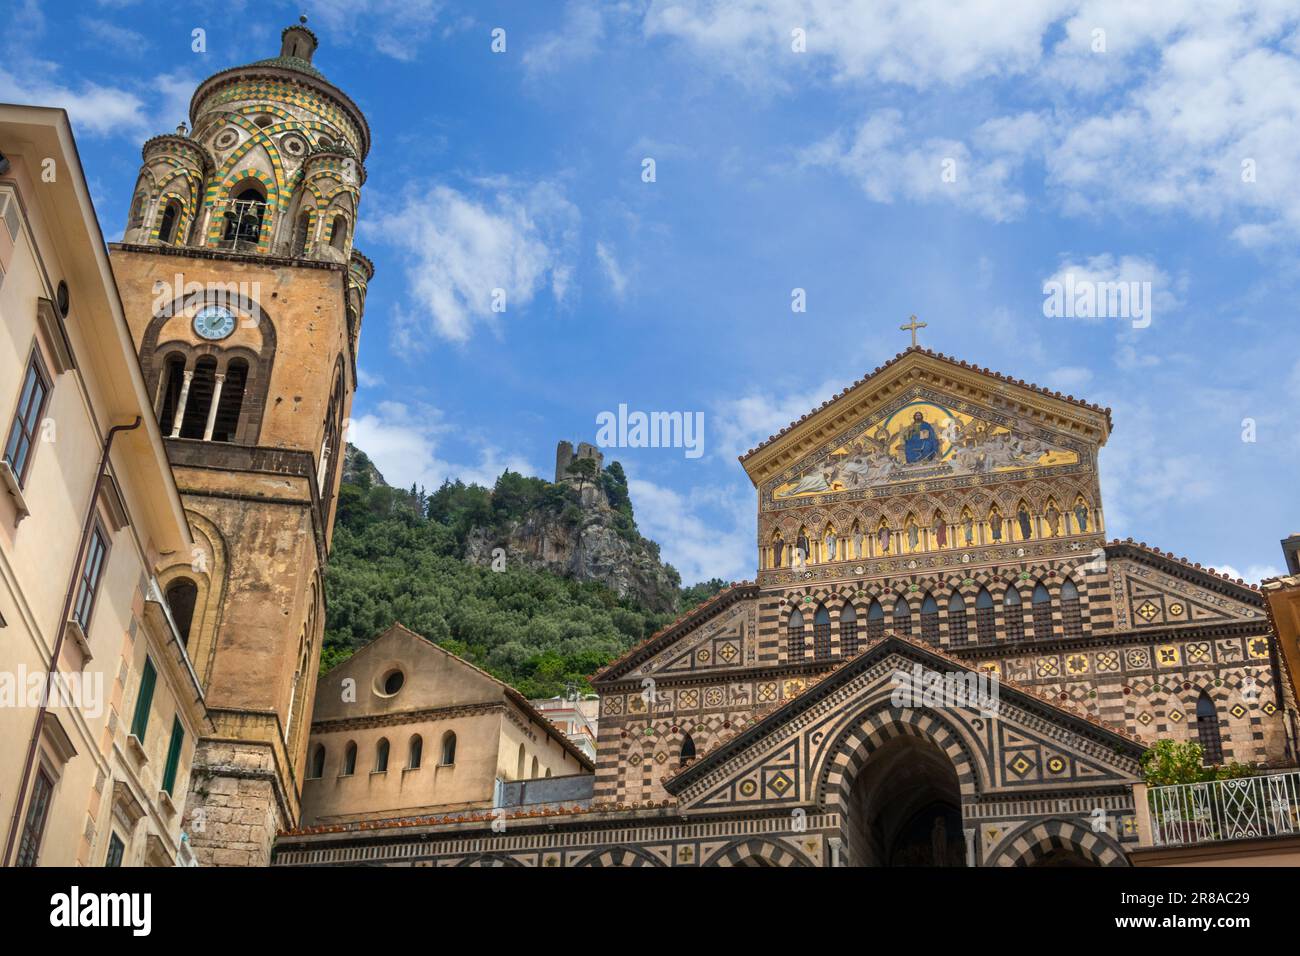 Blick auf die Kathedrale von St. Andrea in der Stadt Amalfi und die Treppen, die von der Piazza del Duomo, Italien, zu ihr führen Stockfoto